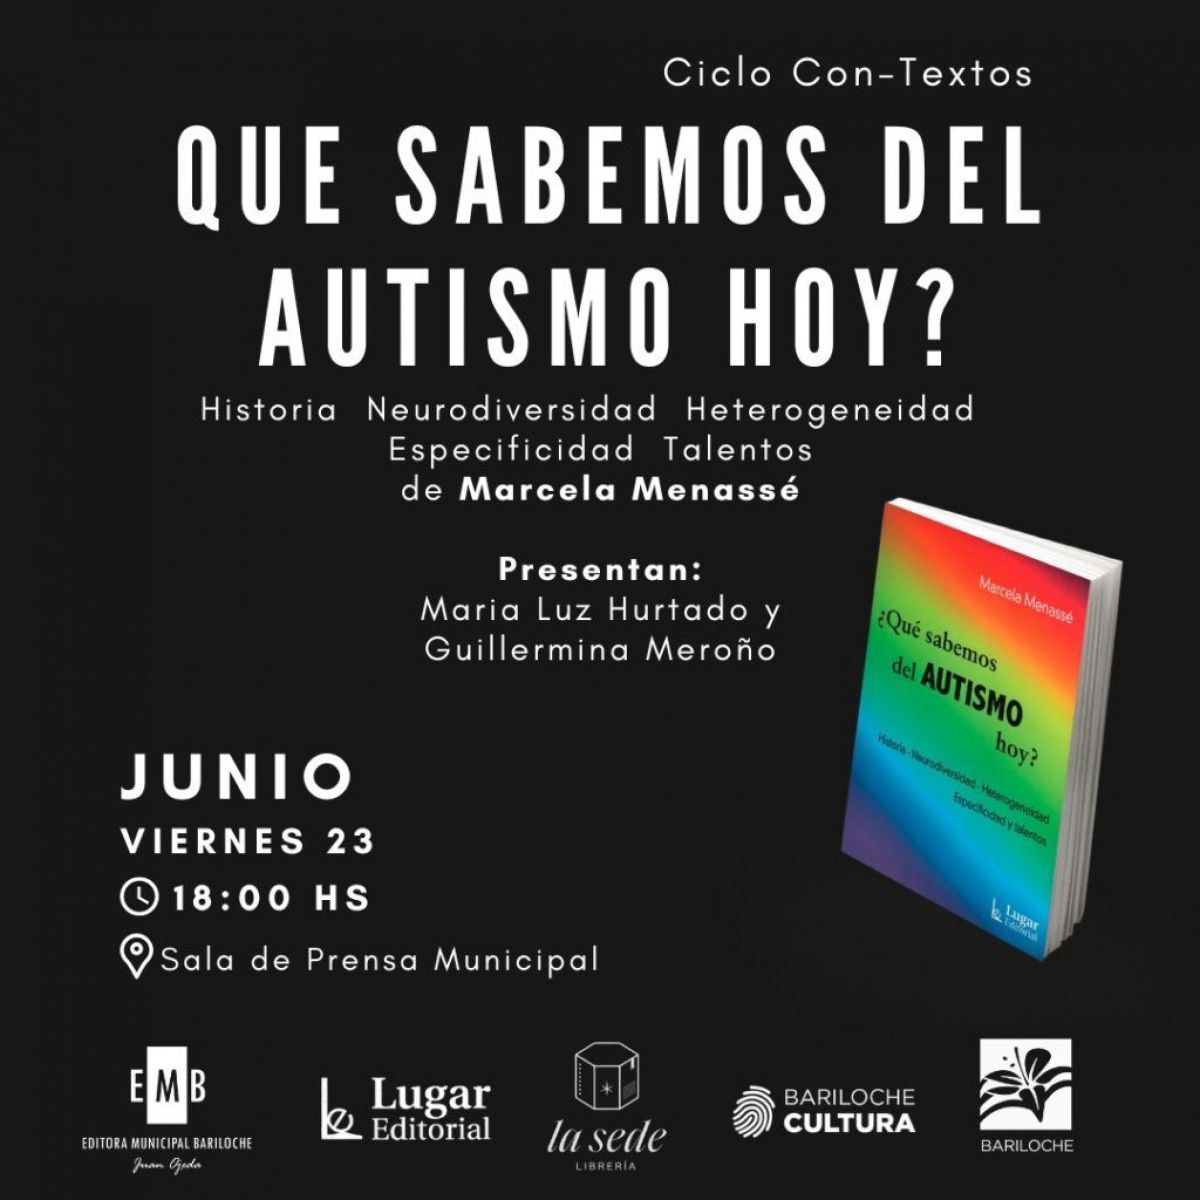 Presentan el libro “¿Qué sabemos del autismo hoy?” de Marcela Menassé